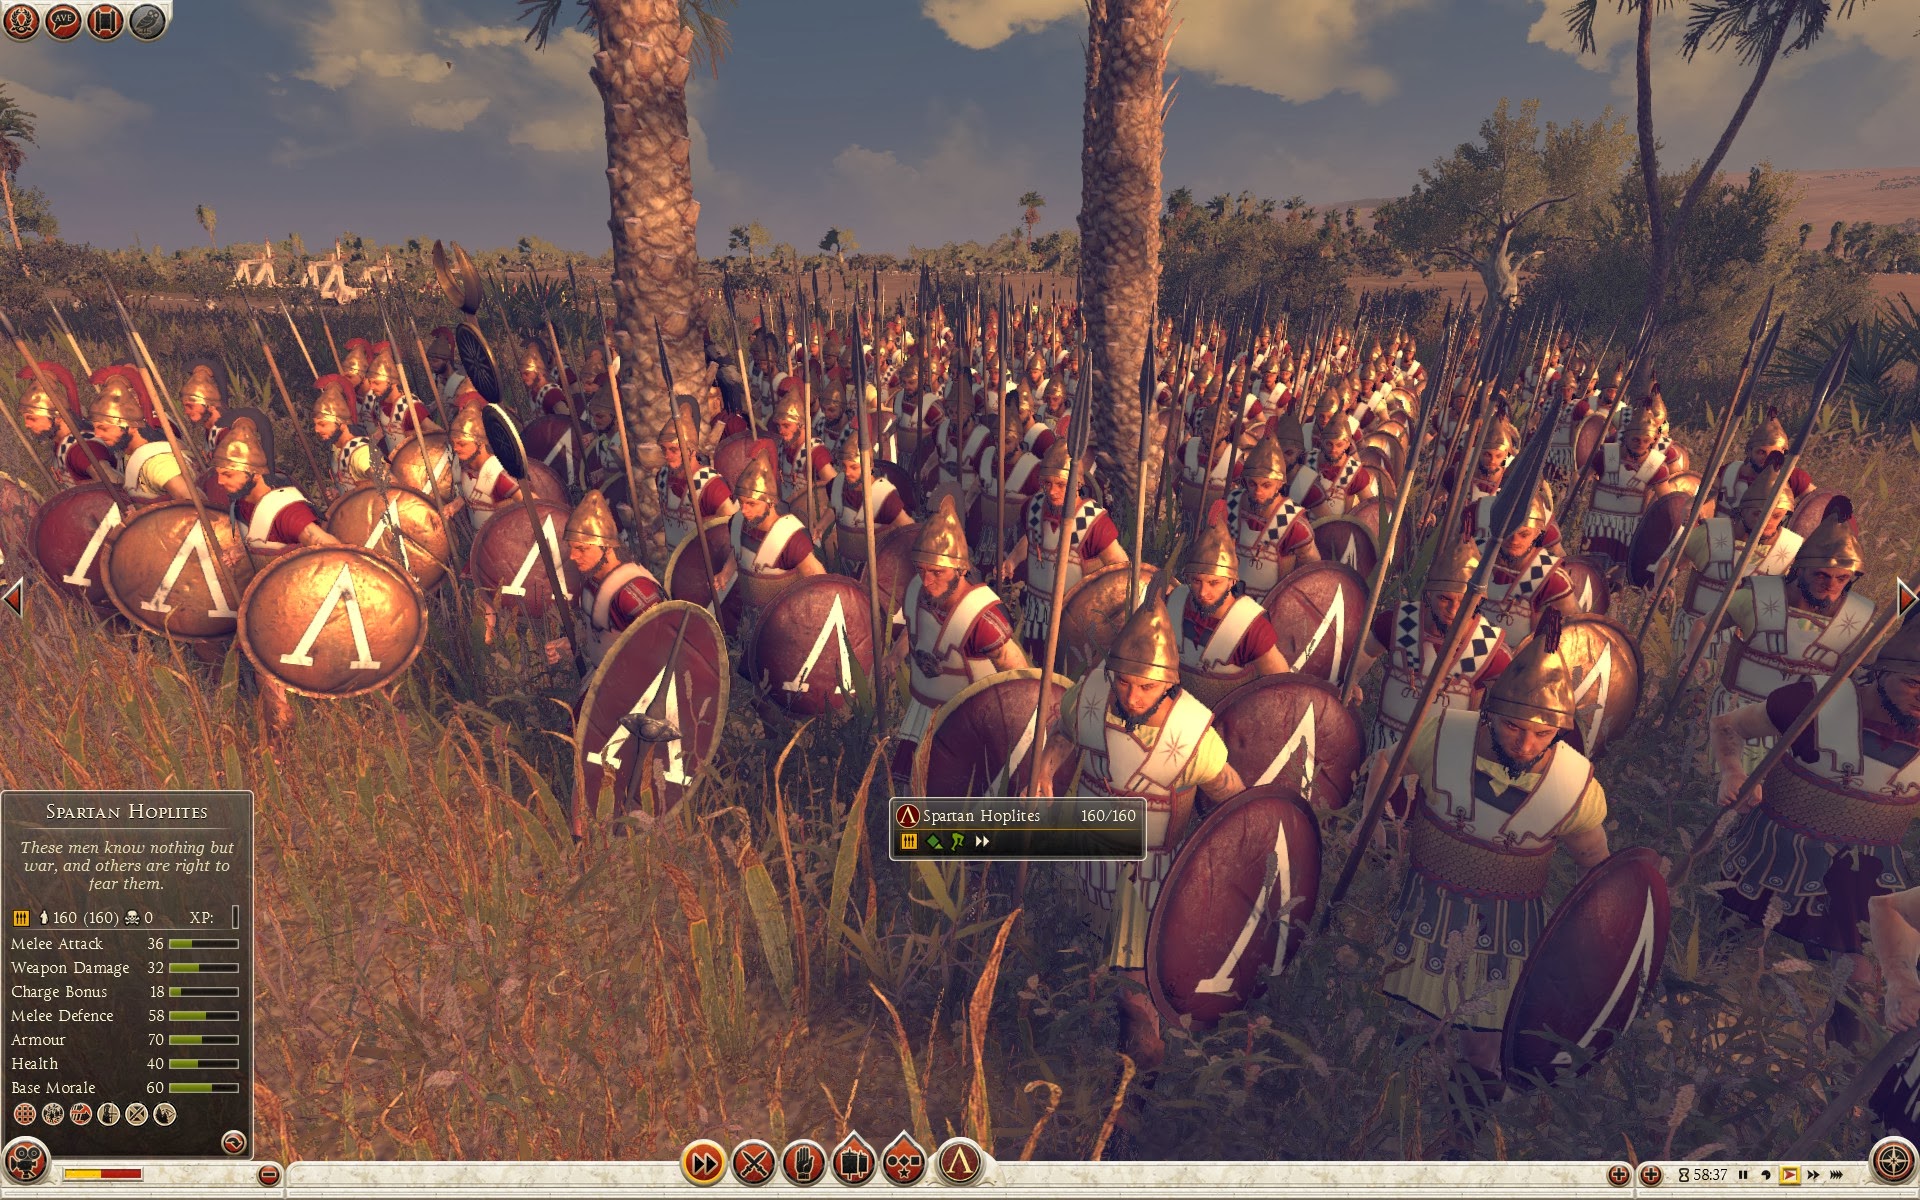 Spartan Hoplites